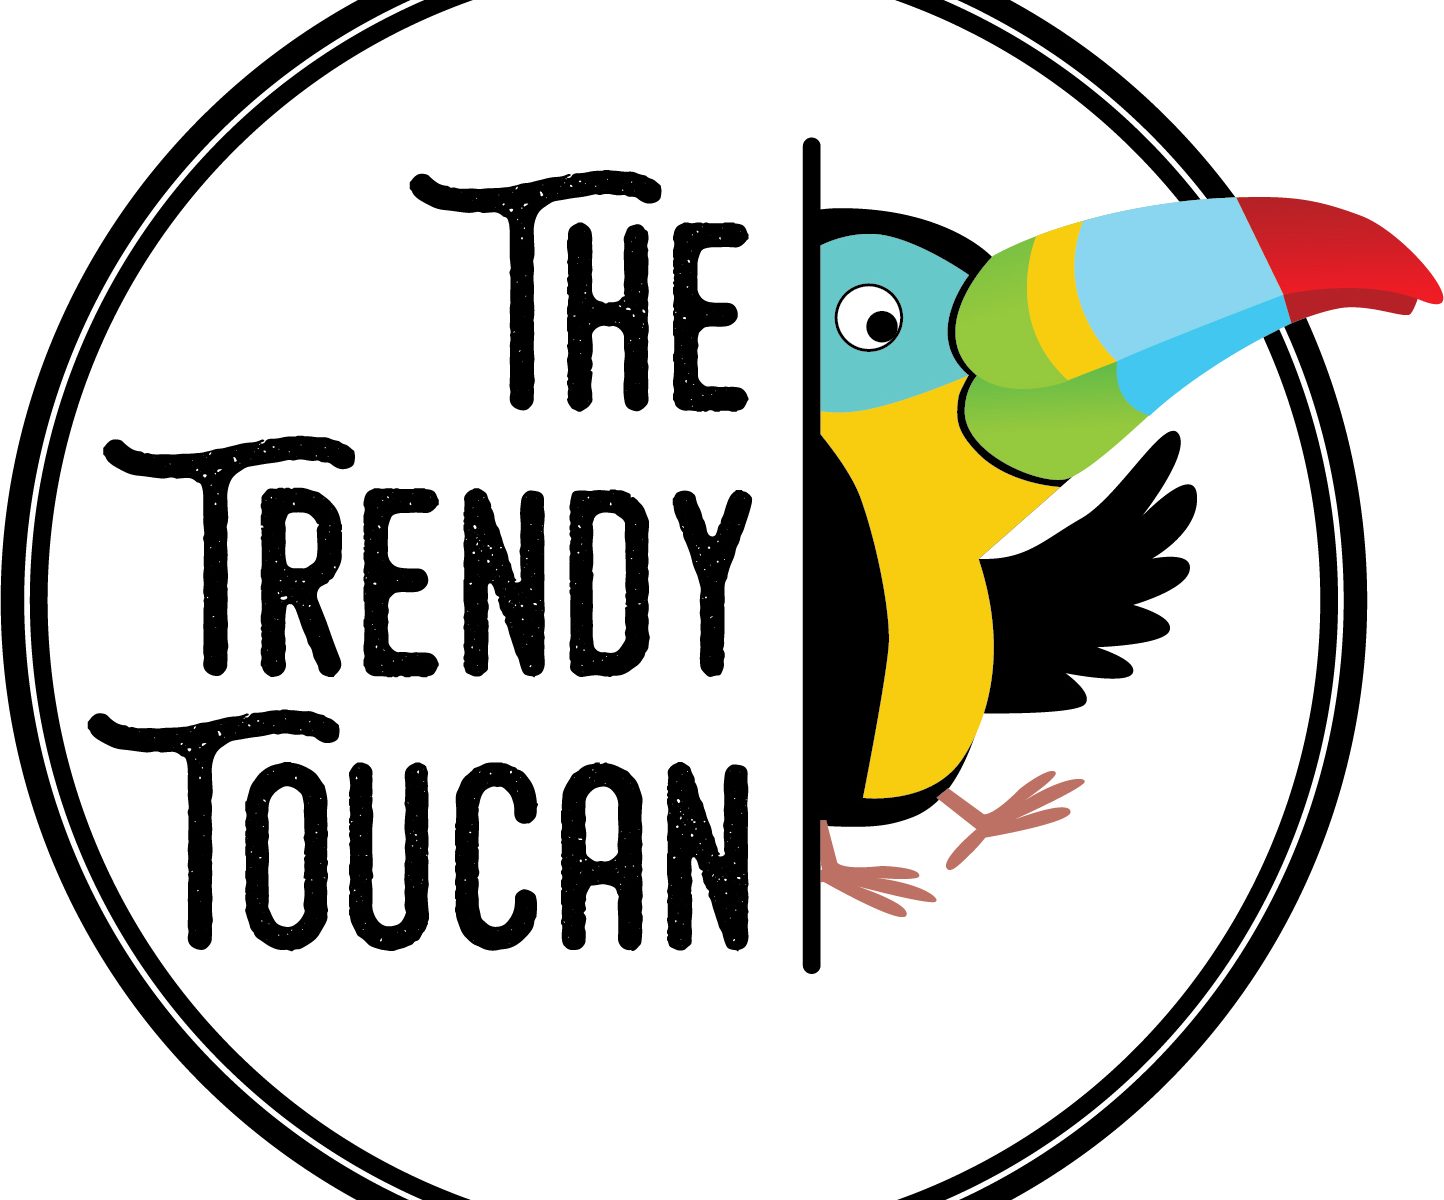 The Trendy Toucan logo